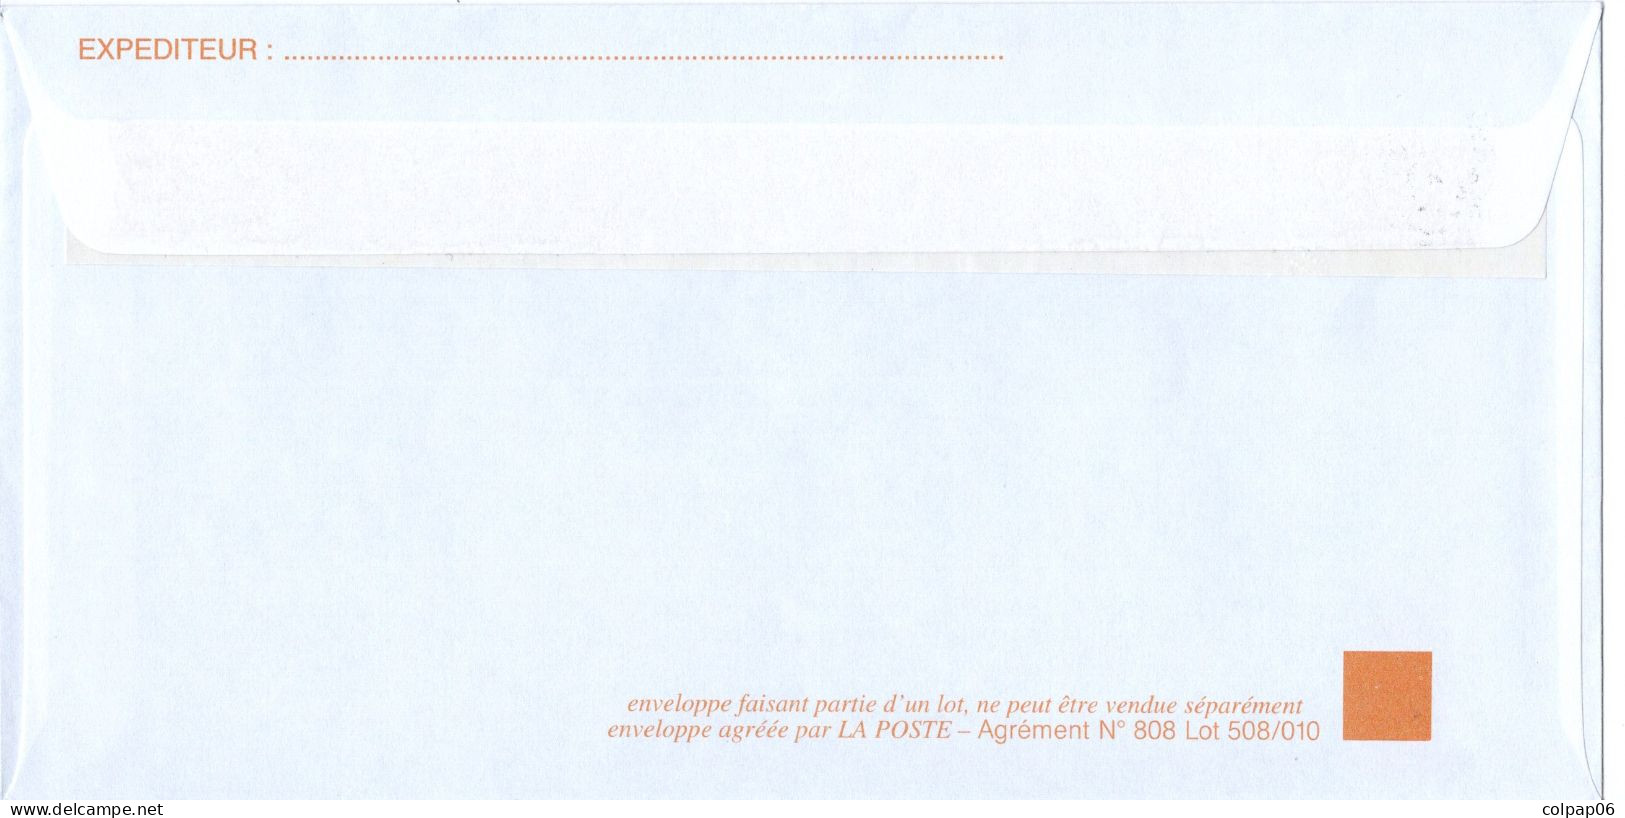 DOuanes Et Droits Indirects - Ministère De L'Economie Et Des Finances - TSC - Neuve - Prêts-à-poster:Stamped On Demand & Semi-official Overprinting (1995-...)